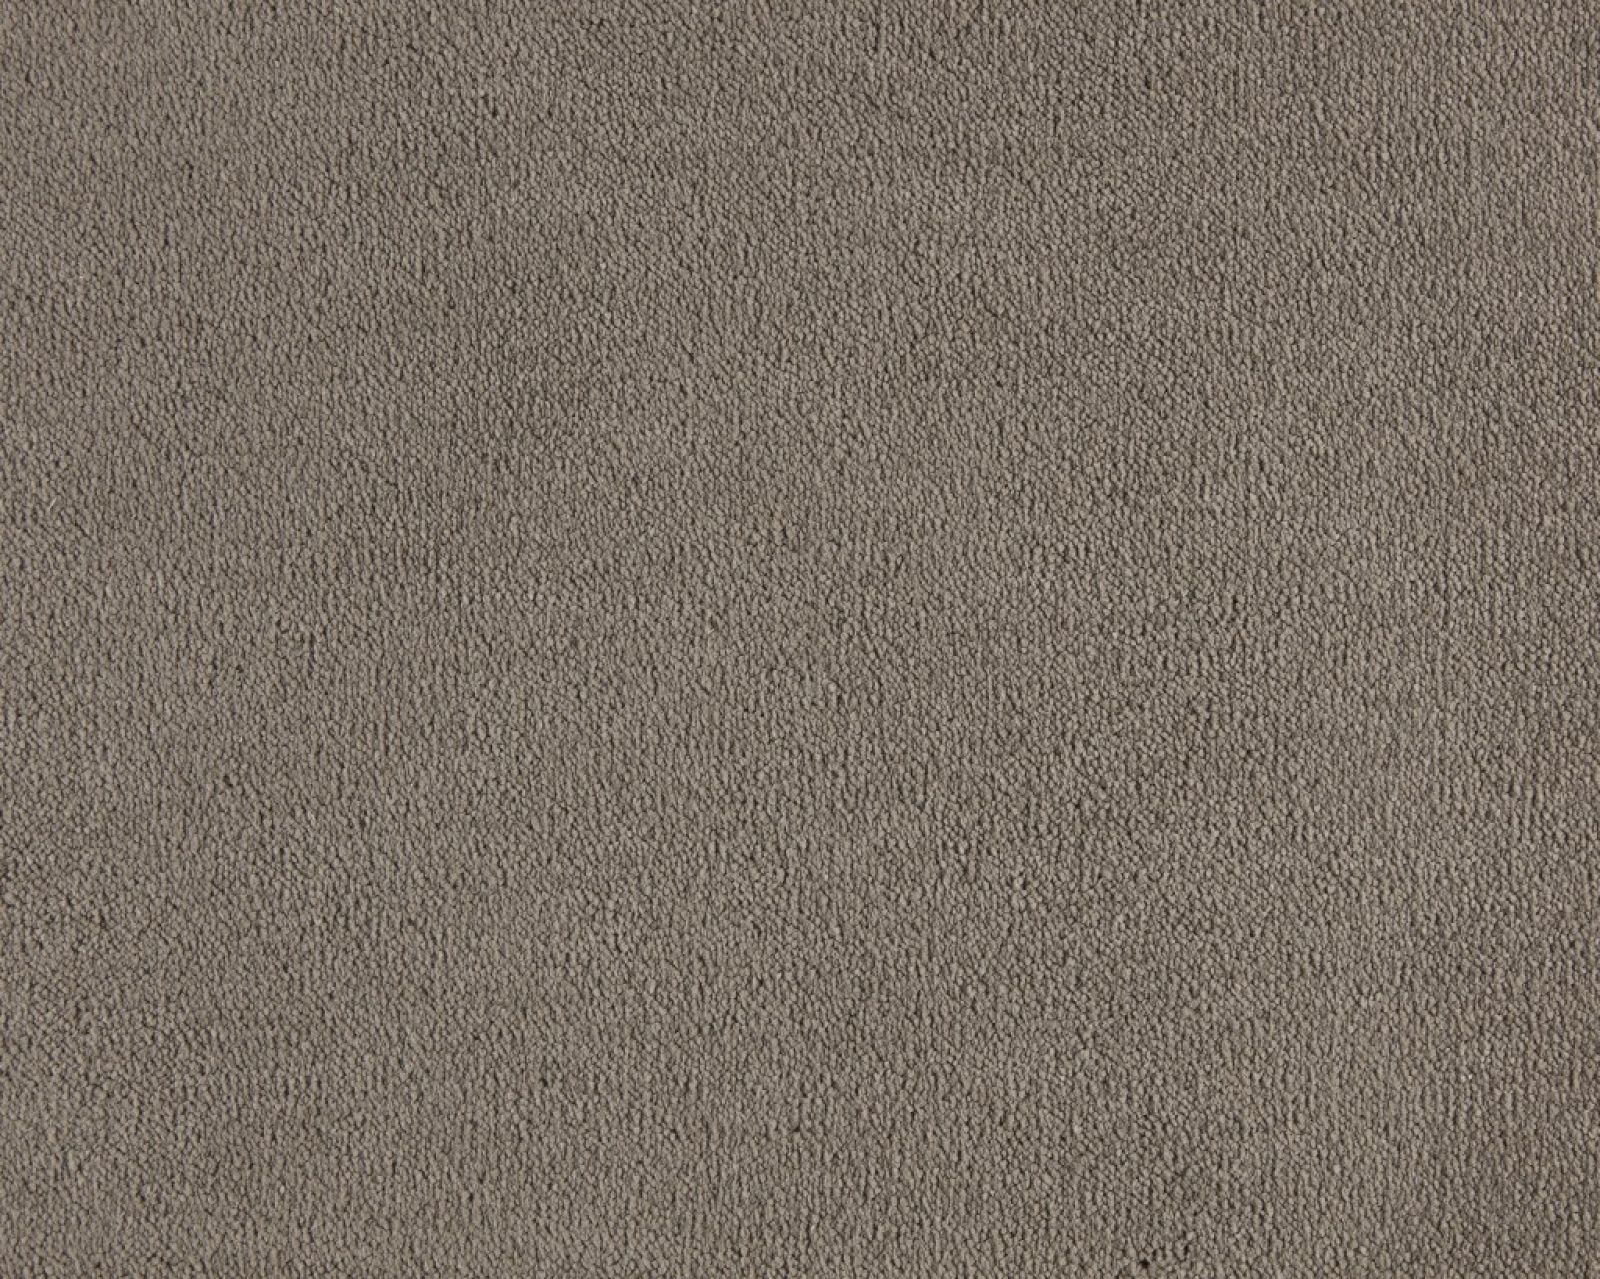 Celeste Saxony Carpet | Tapi Carpets & Floors